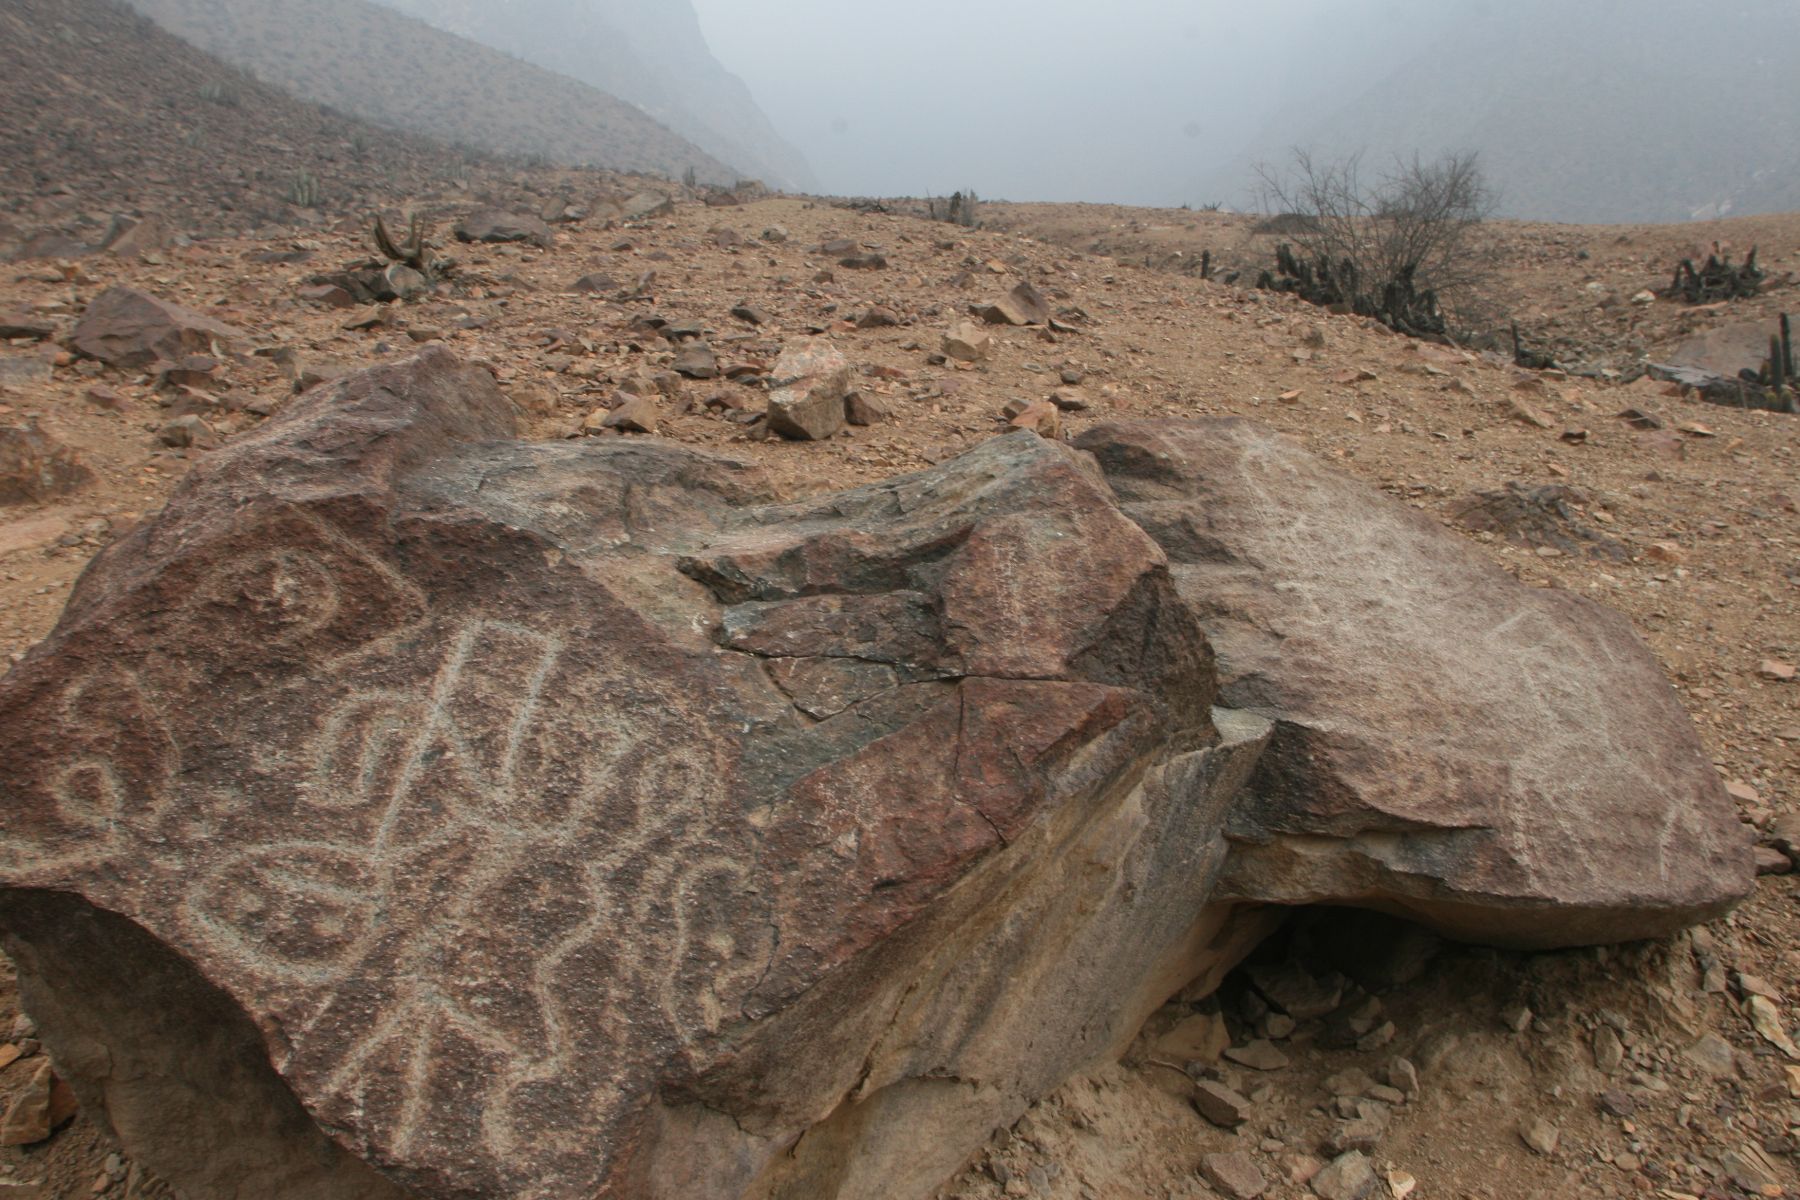 Los petroglifos de Checta, ubicados en el valle del Chillón, enfrentan un grave peligro para su conservación.